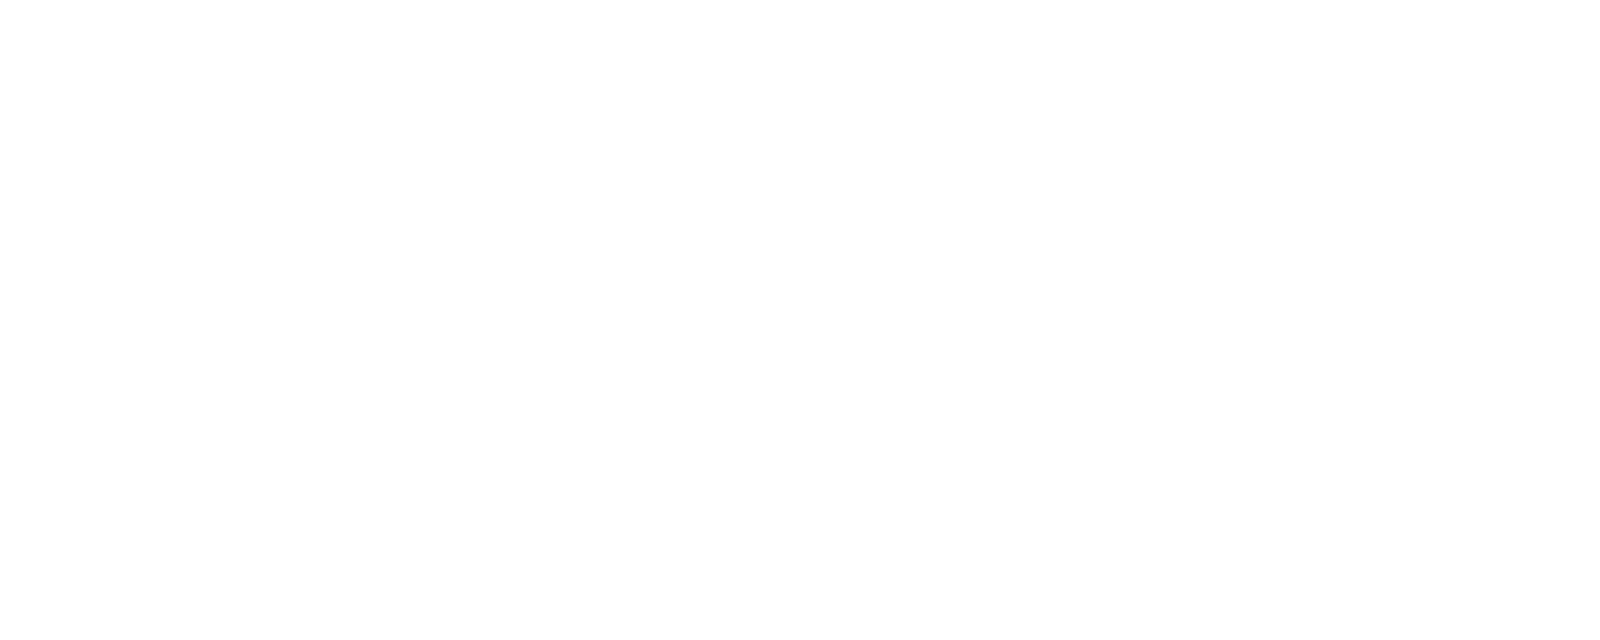 Logodol 全てが高画質 背景透過なアーティストのロゴをお届けするブログ Babymetal の背景透明で大きなロゴを再現したのだけれど 途中で心折れたよ